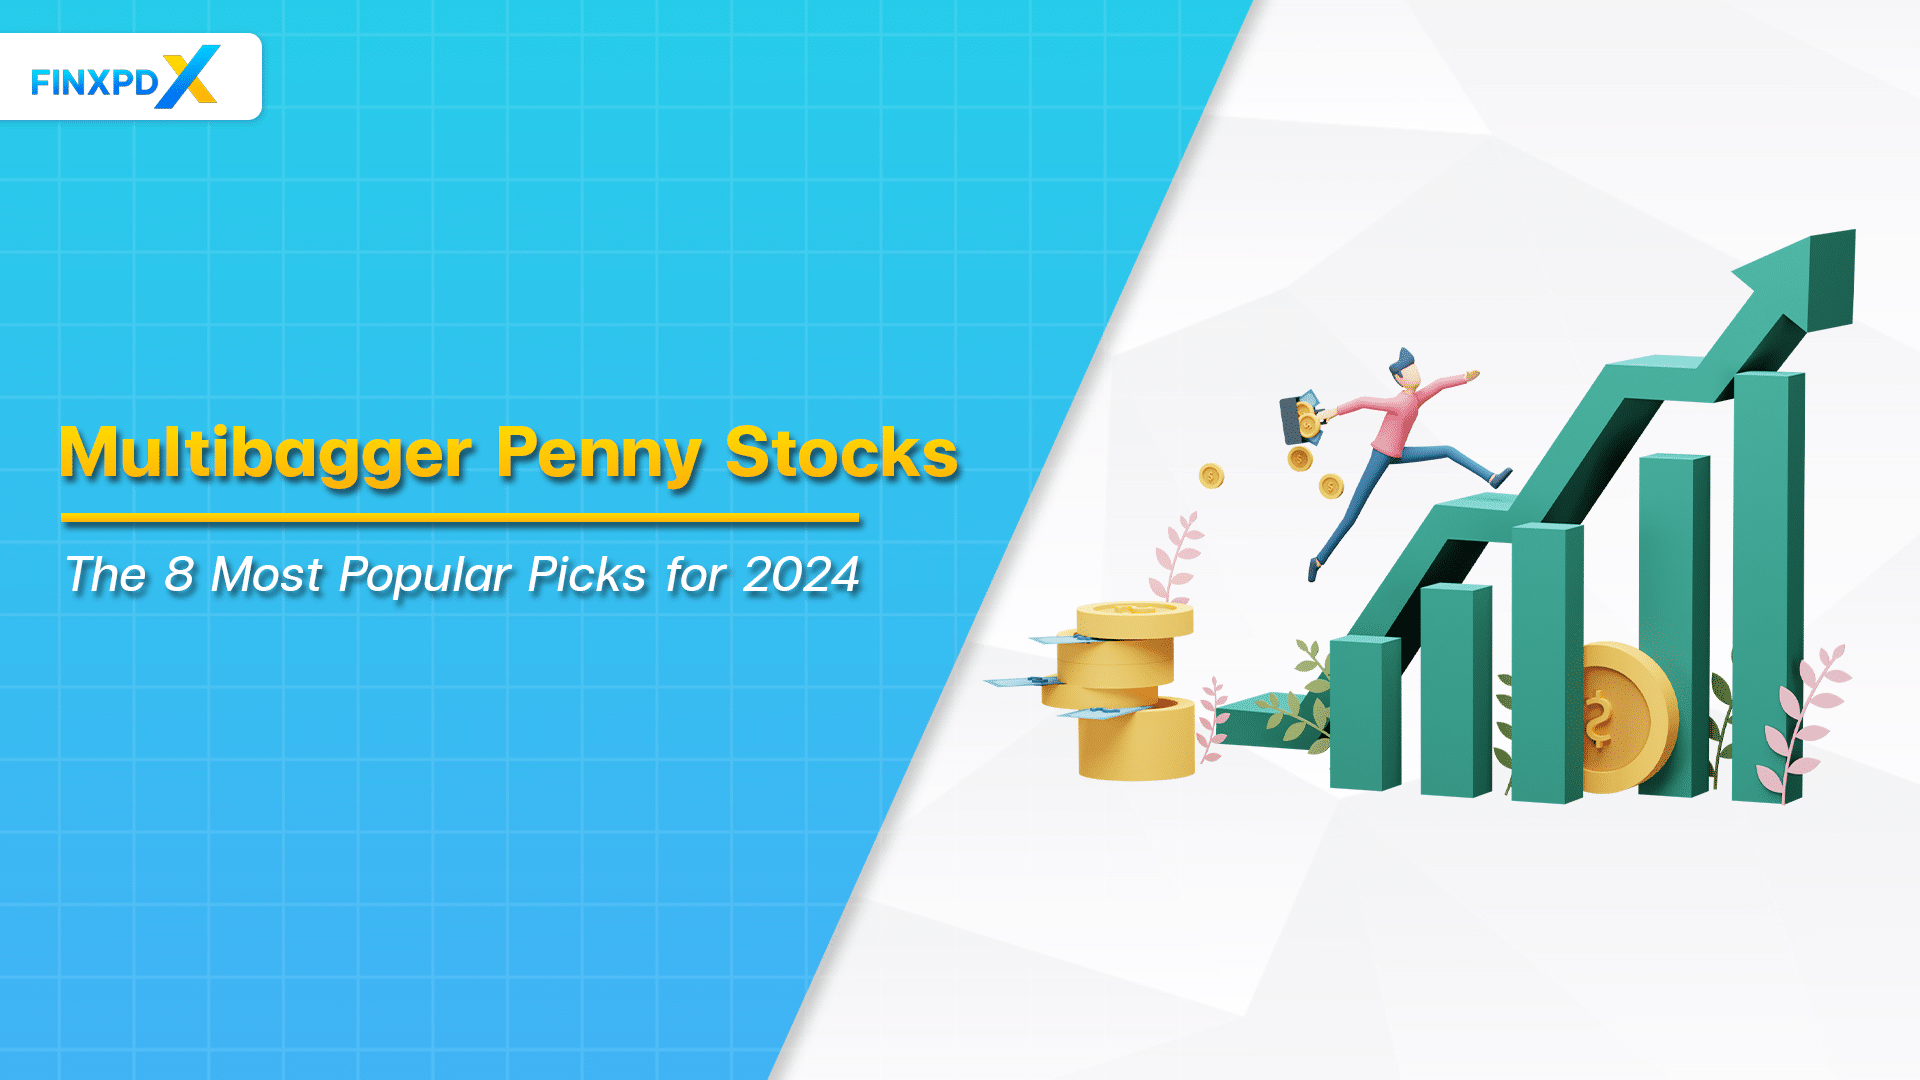 Multibagger Penny Stocks For 2024